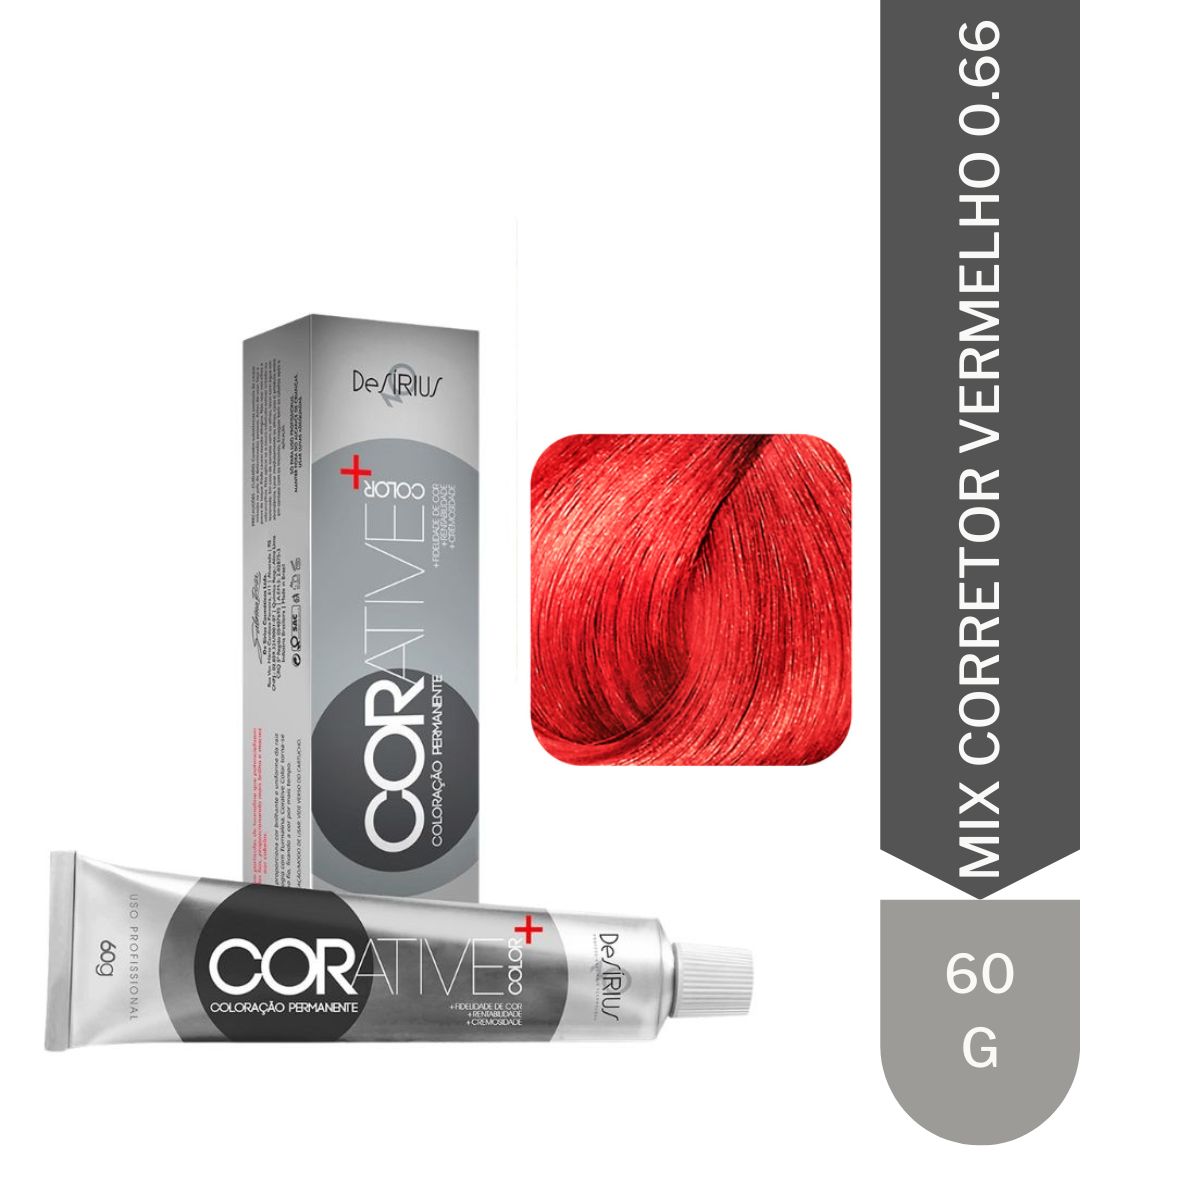 Mix Corretor 0.66 Vermelho Corative Color 60g